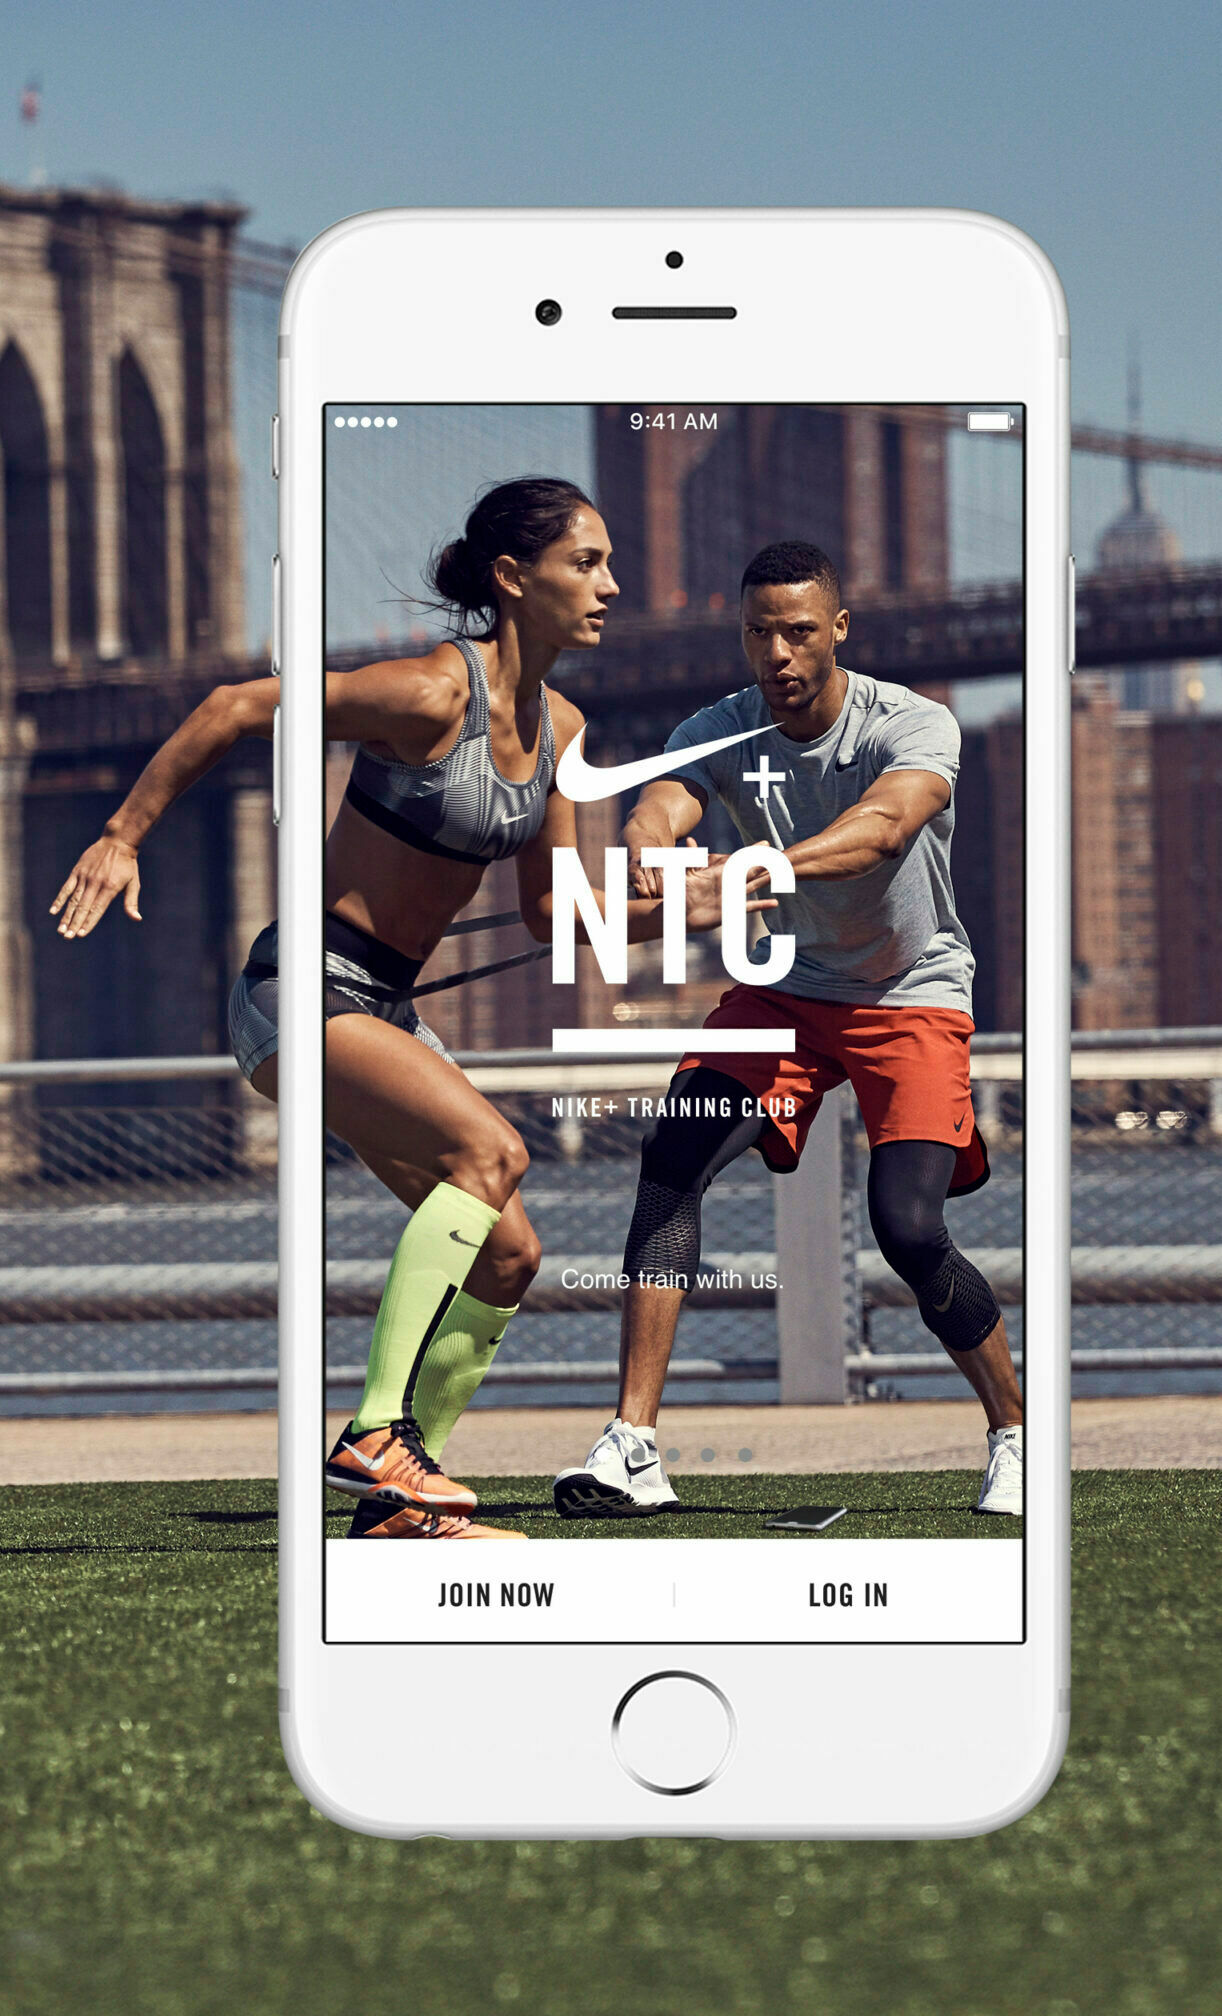 Vorschau der App Nike Training Club auf einem Smartphone